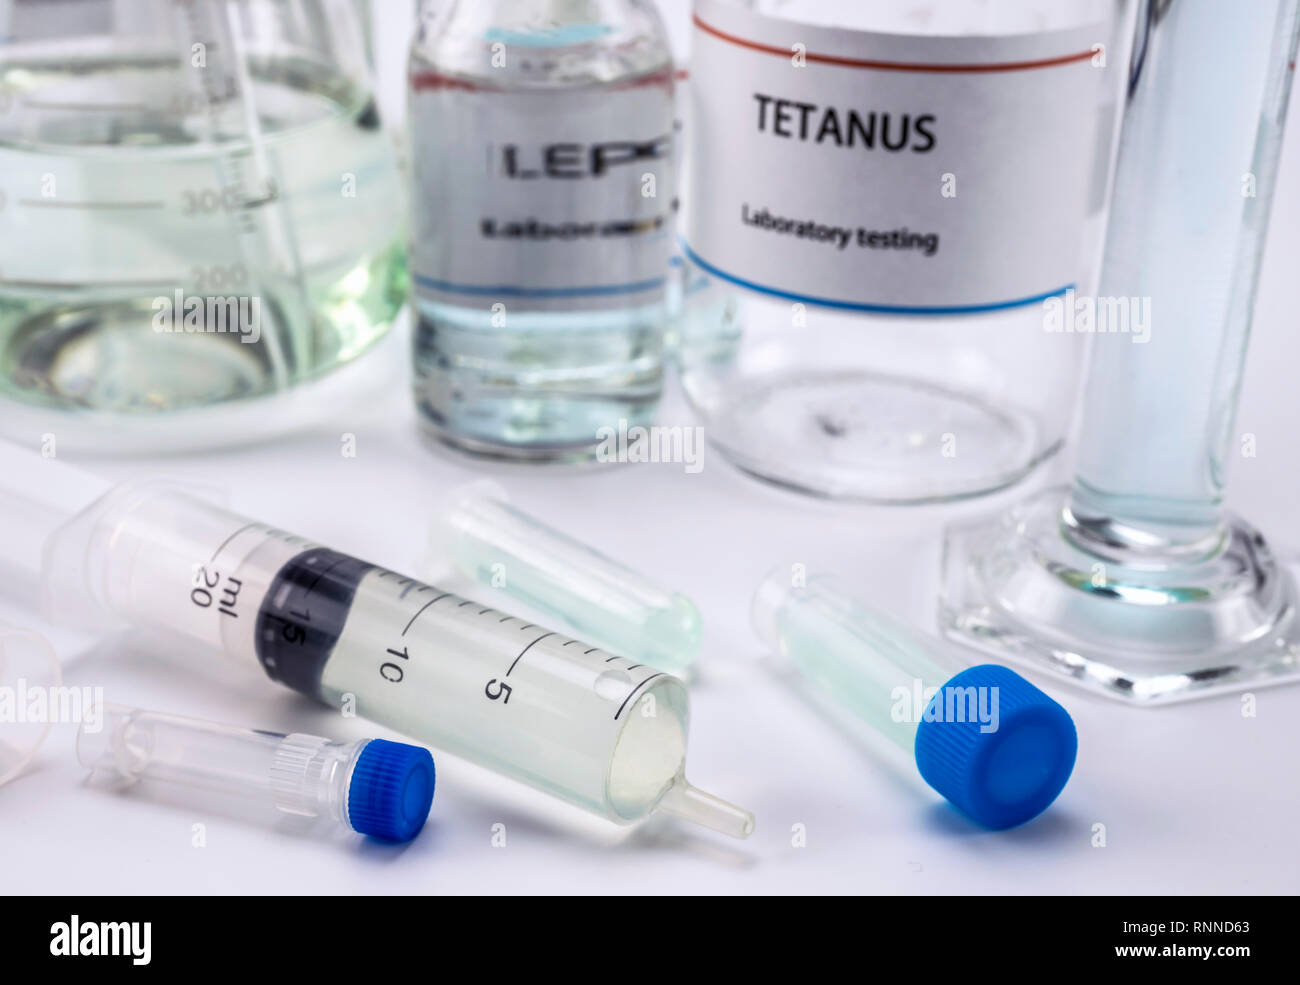 Il tetano test in laboratorio, la siringa con i farmaci per il campionamento, immagine concettuale, composizione in orizzontale Foto Stock